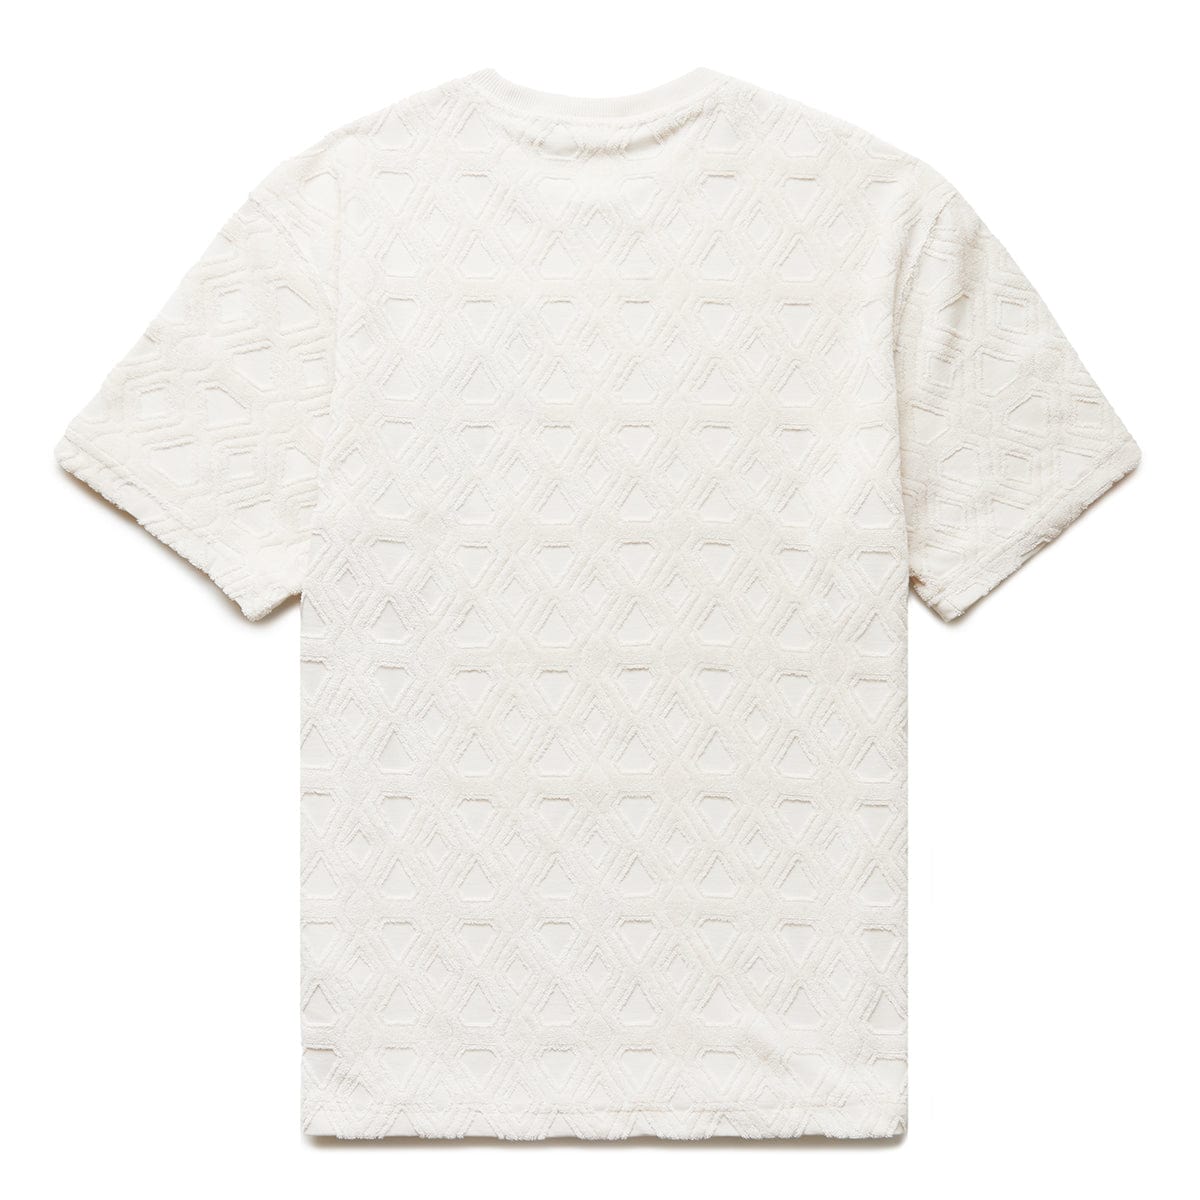 Louis Vuitton Towel Shirts For Women